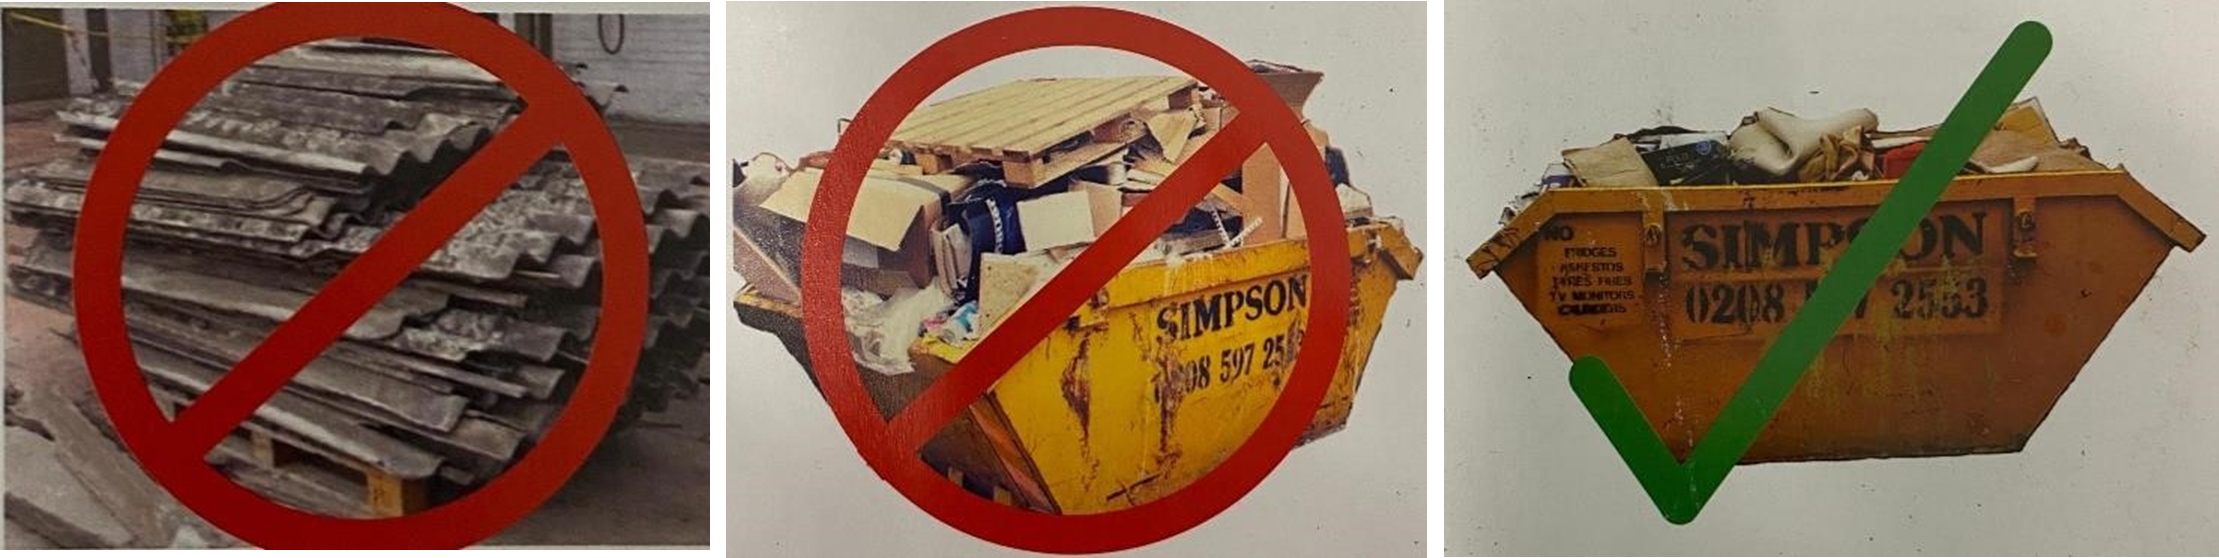 No Overloading Of Skips - Simpson Skip Hire Ltd